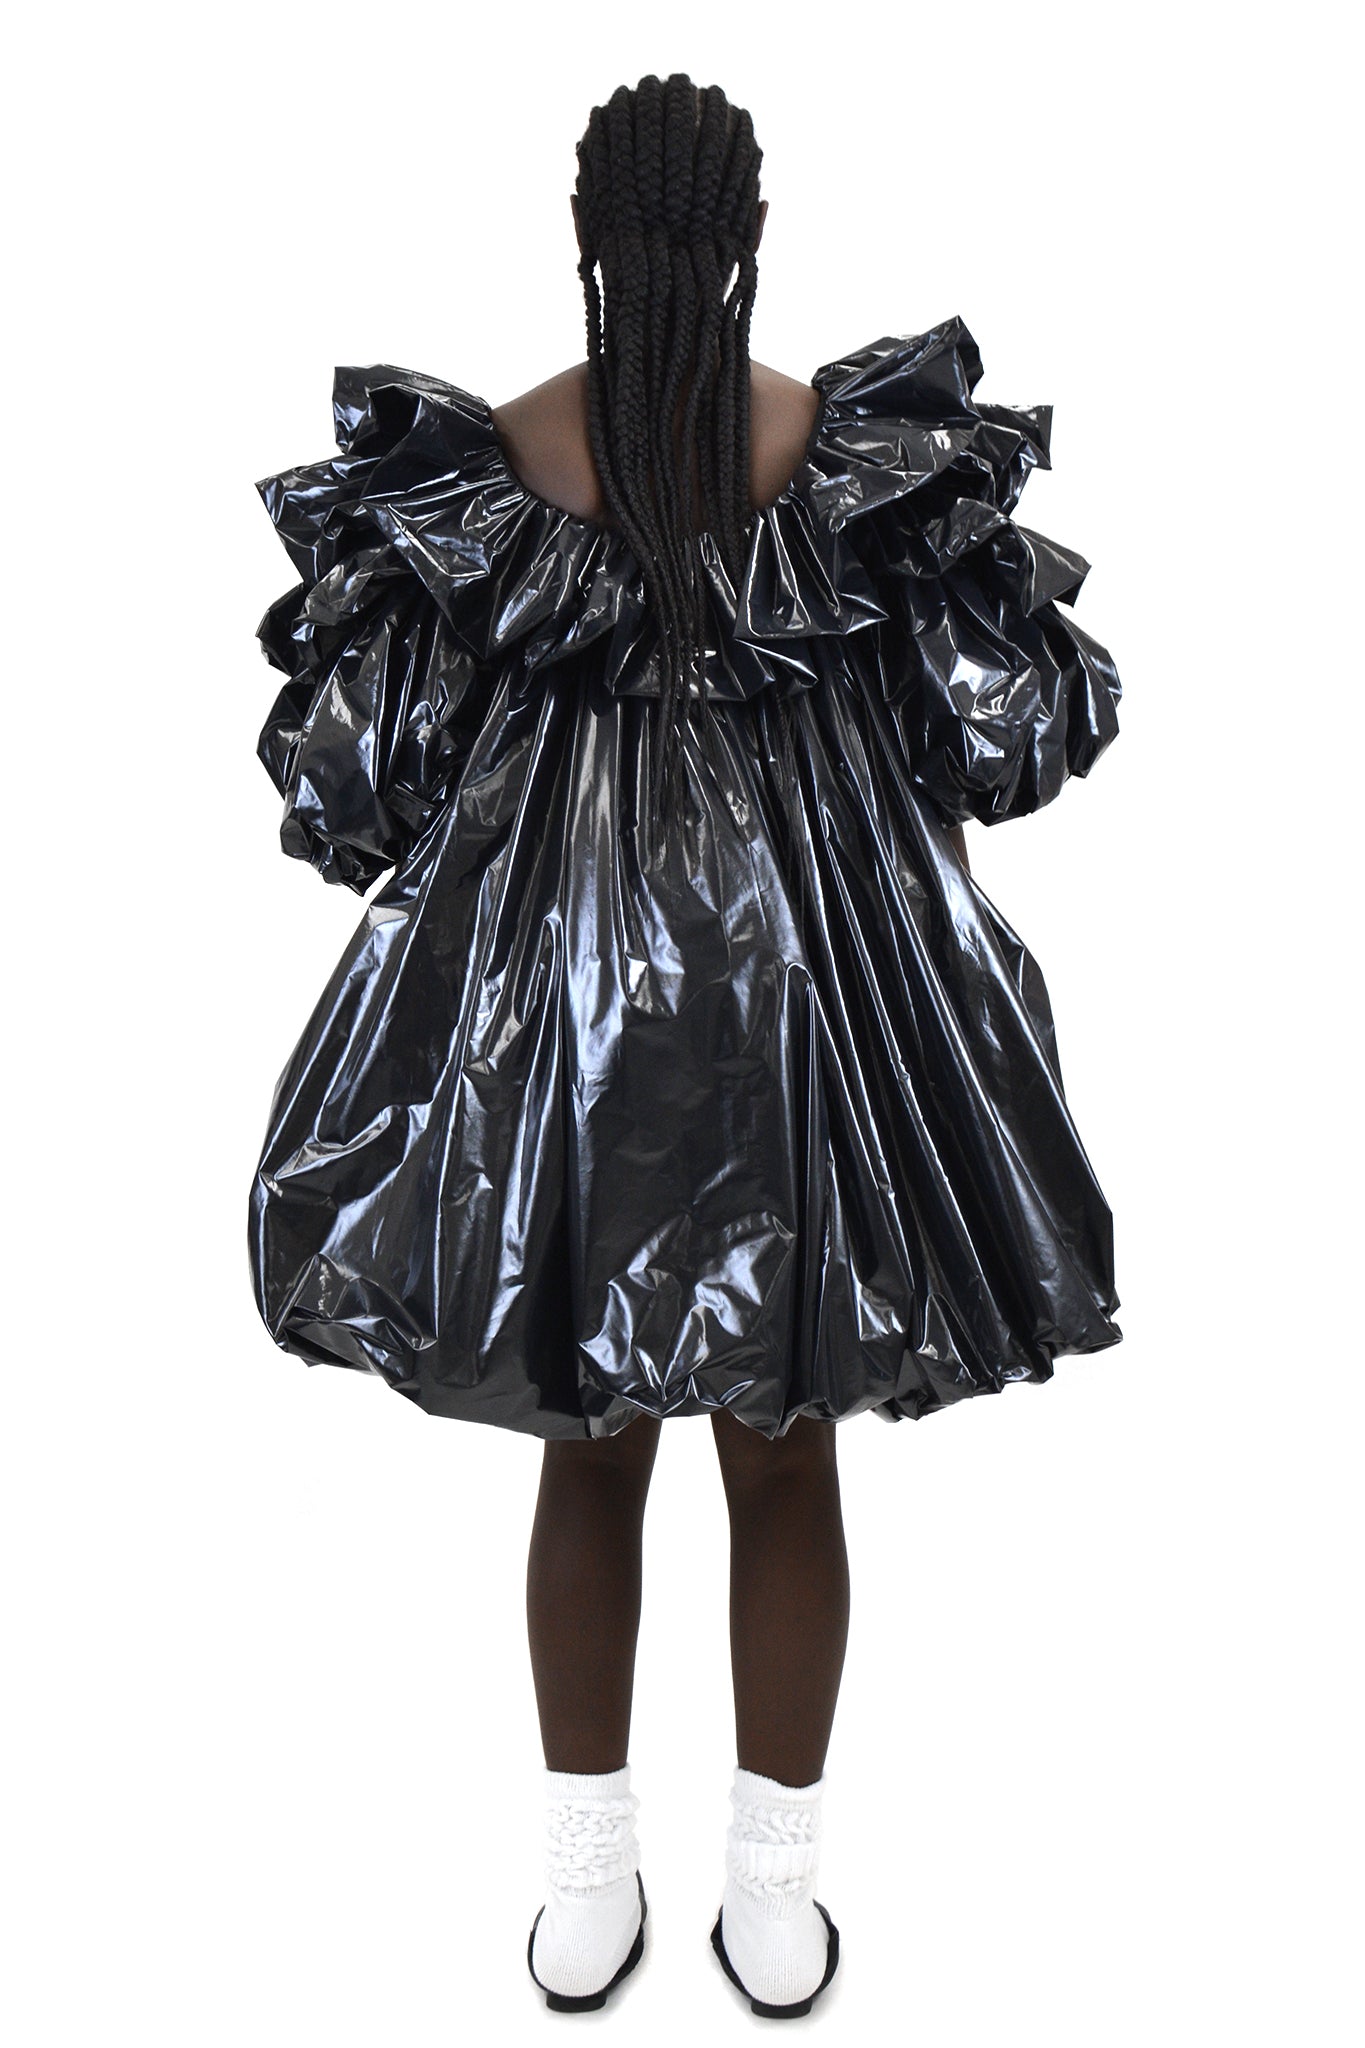 Dress Down: Wild Women's Dresses Made of Trash, Trees & More - WebUrbanist